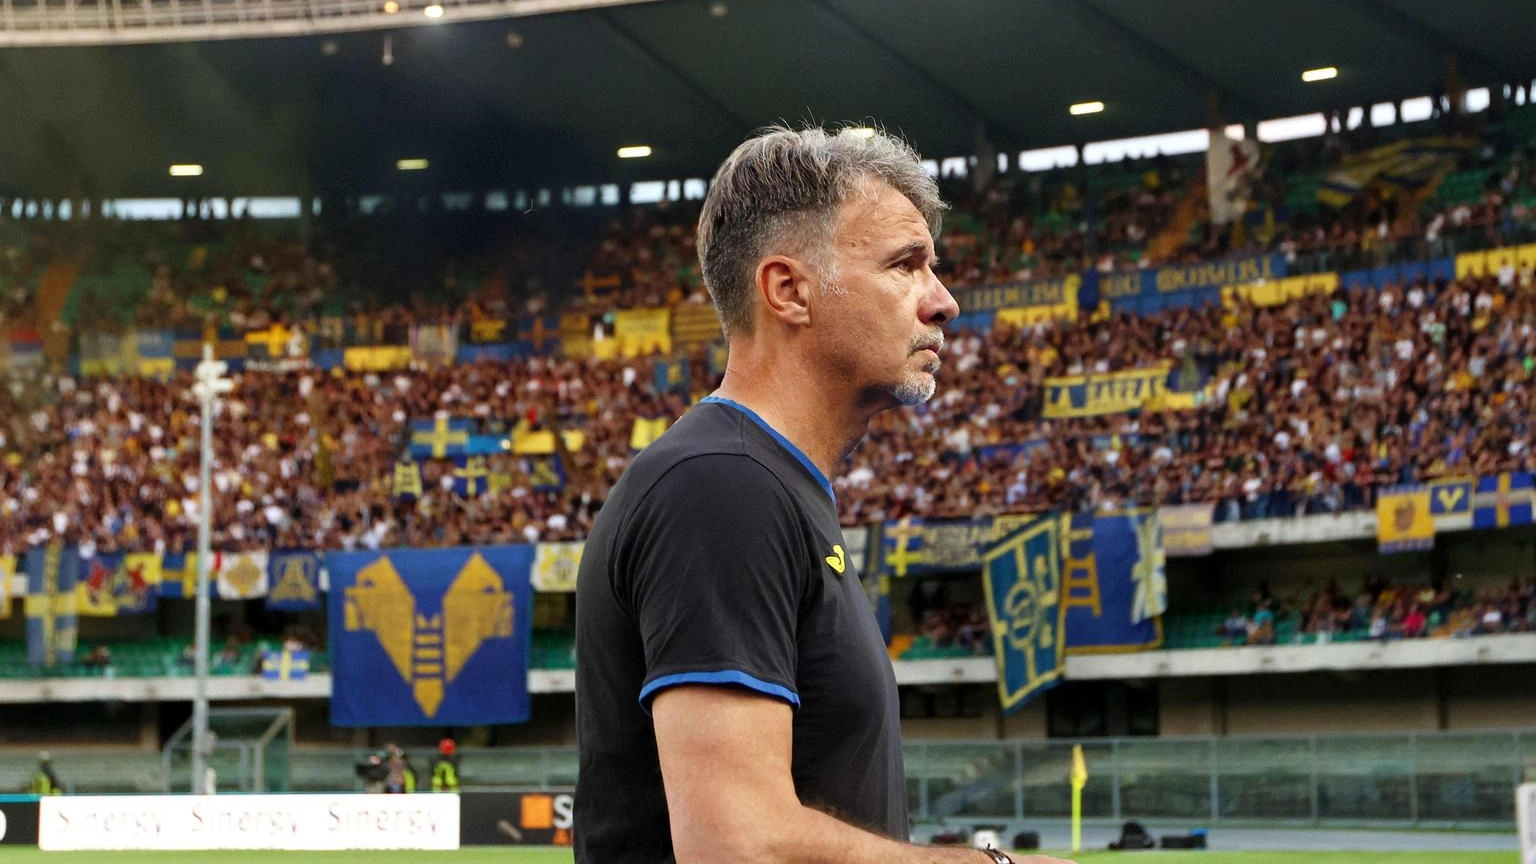 Calcio:Baroni lascia Formello, finito incontro con la Lazio